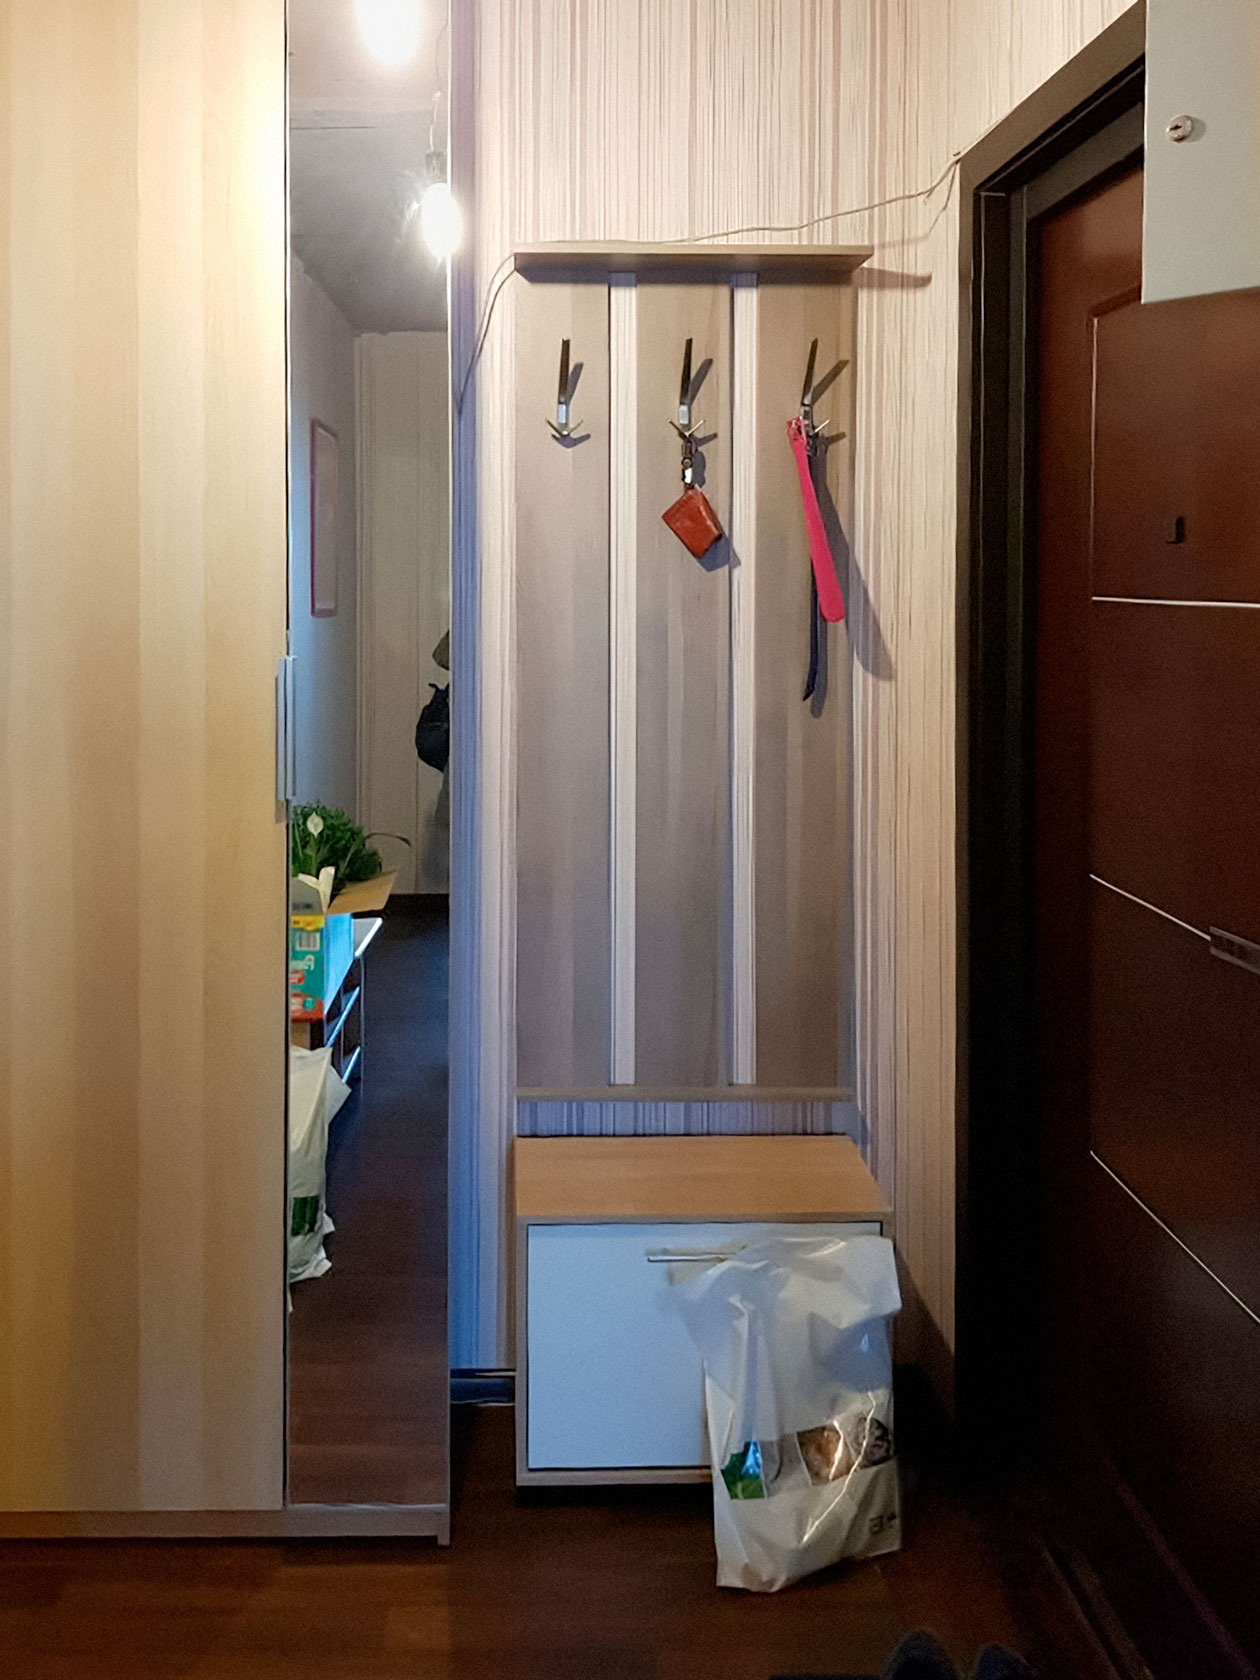 Квартира в Подольске. Если присмотреться, в отражении зеркала видно свисающую лампочку и то, что нет потолков